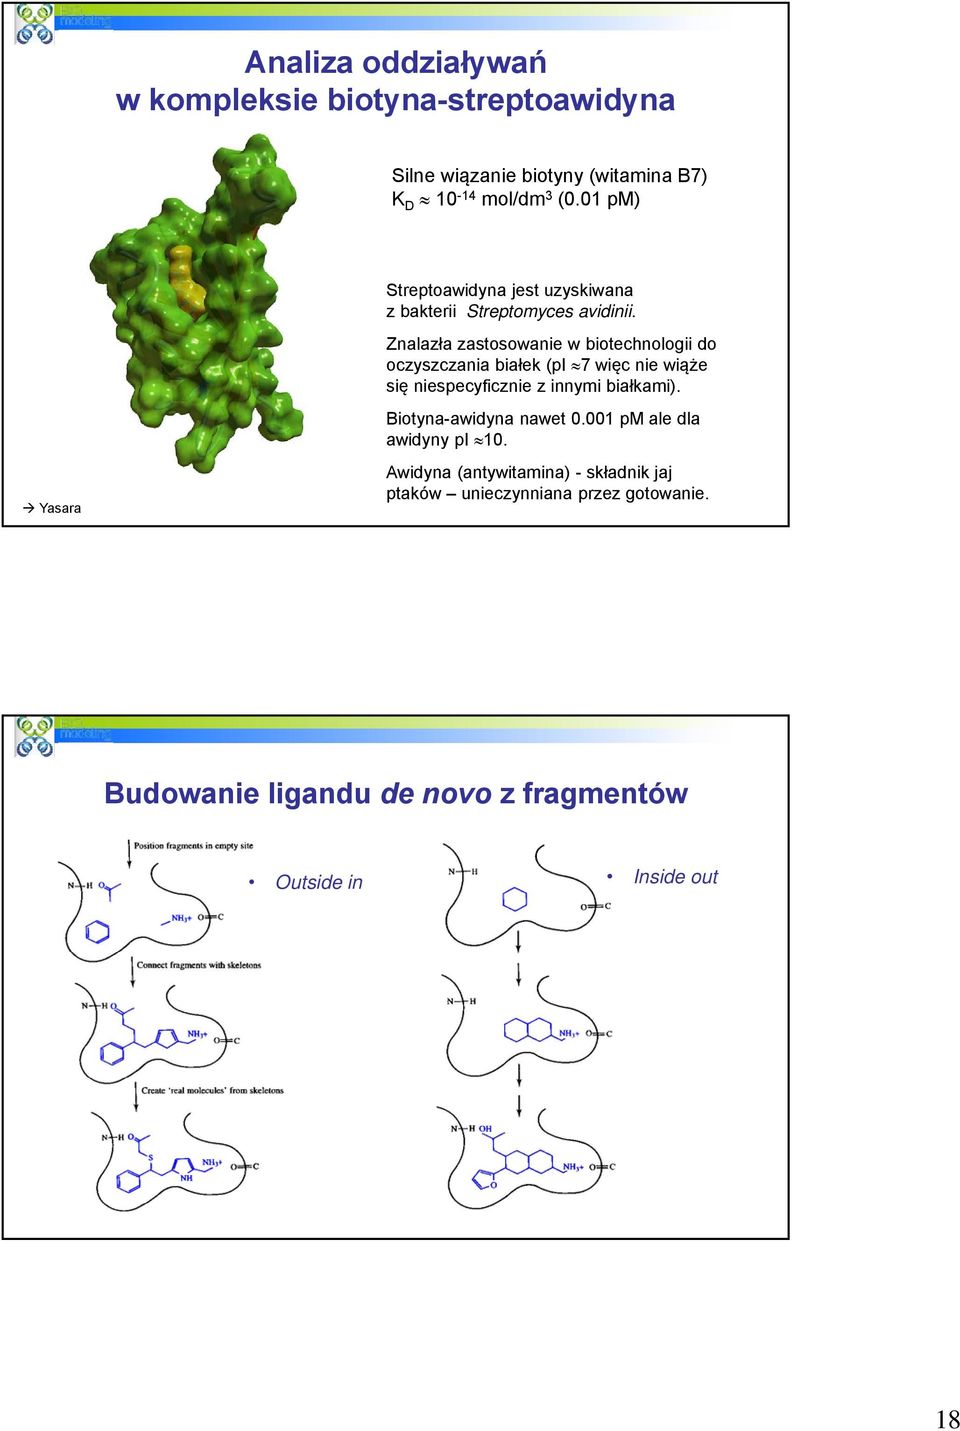 Znalazła zastosowanie w biotechnologii do oczyszczania białek (pi 7 więc nie wiąże się niespecyficznie z innymi białkami).